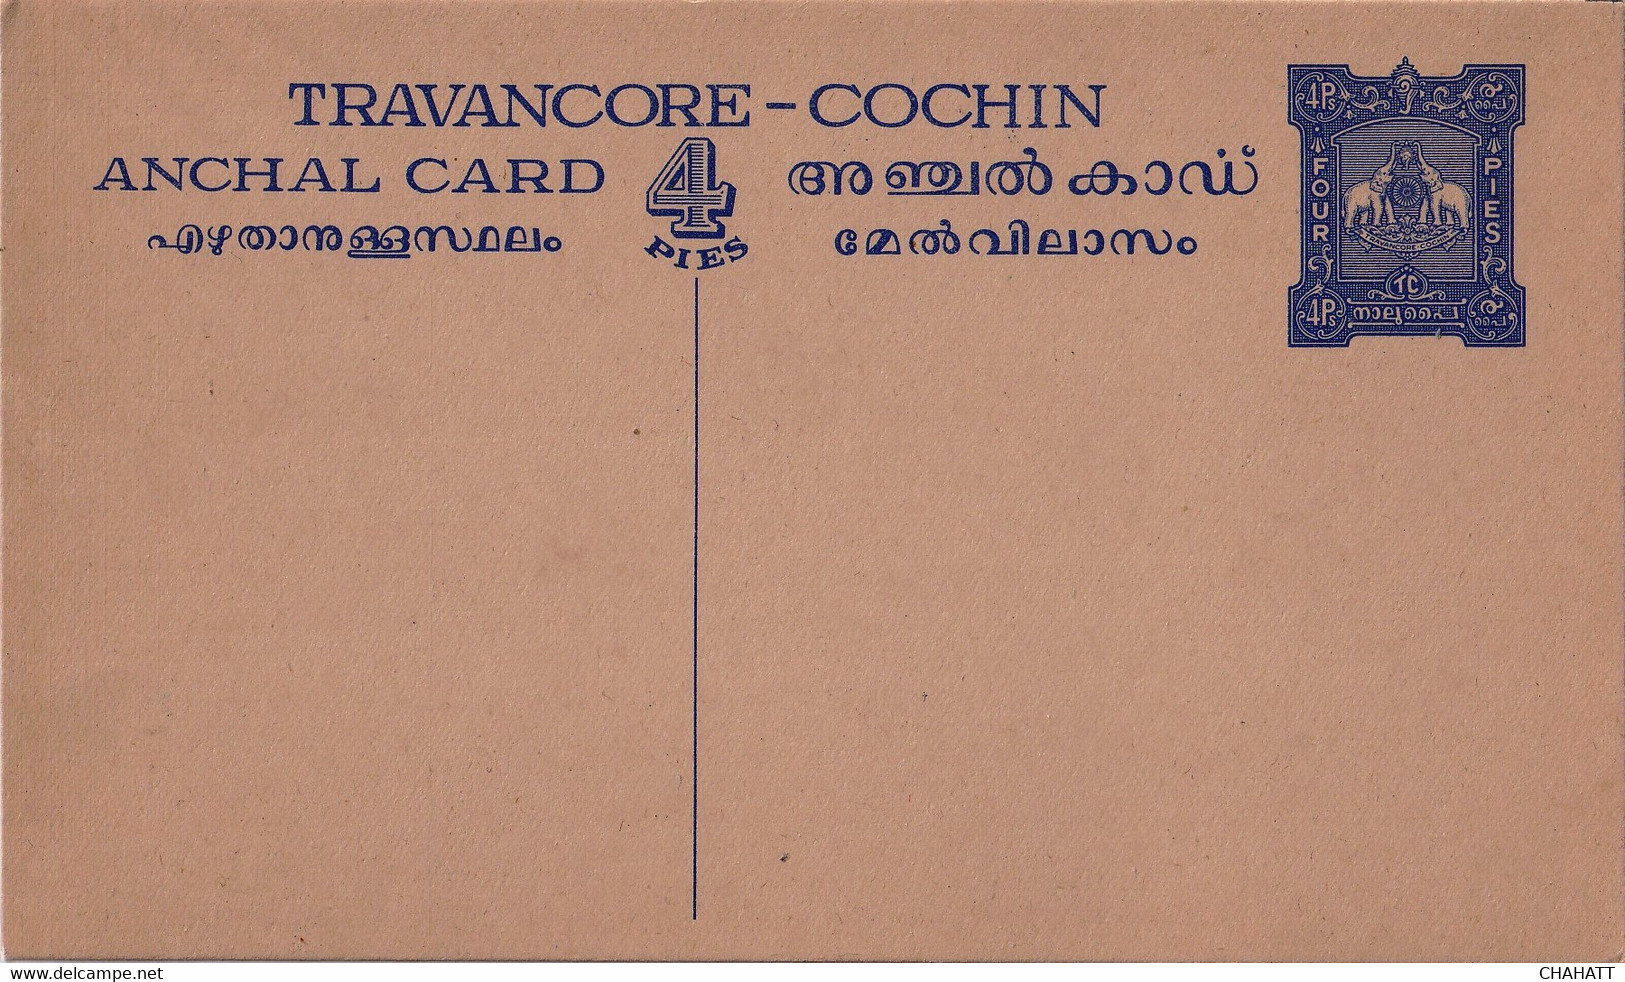 TRAVANCORE-COCHIN STATE-INDIA- PRE DECIMAL 4p POST CARD- MINT-INDIA-D5-111 - Travancore-Cochin